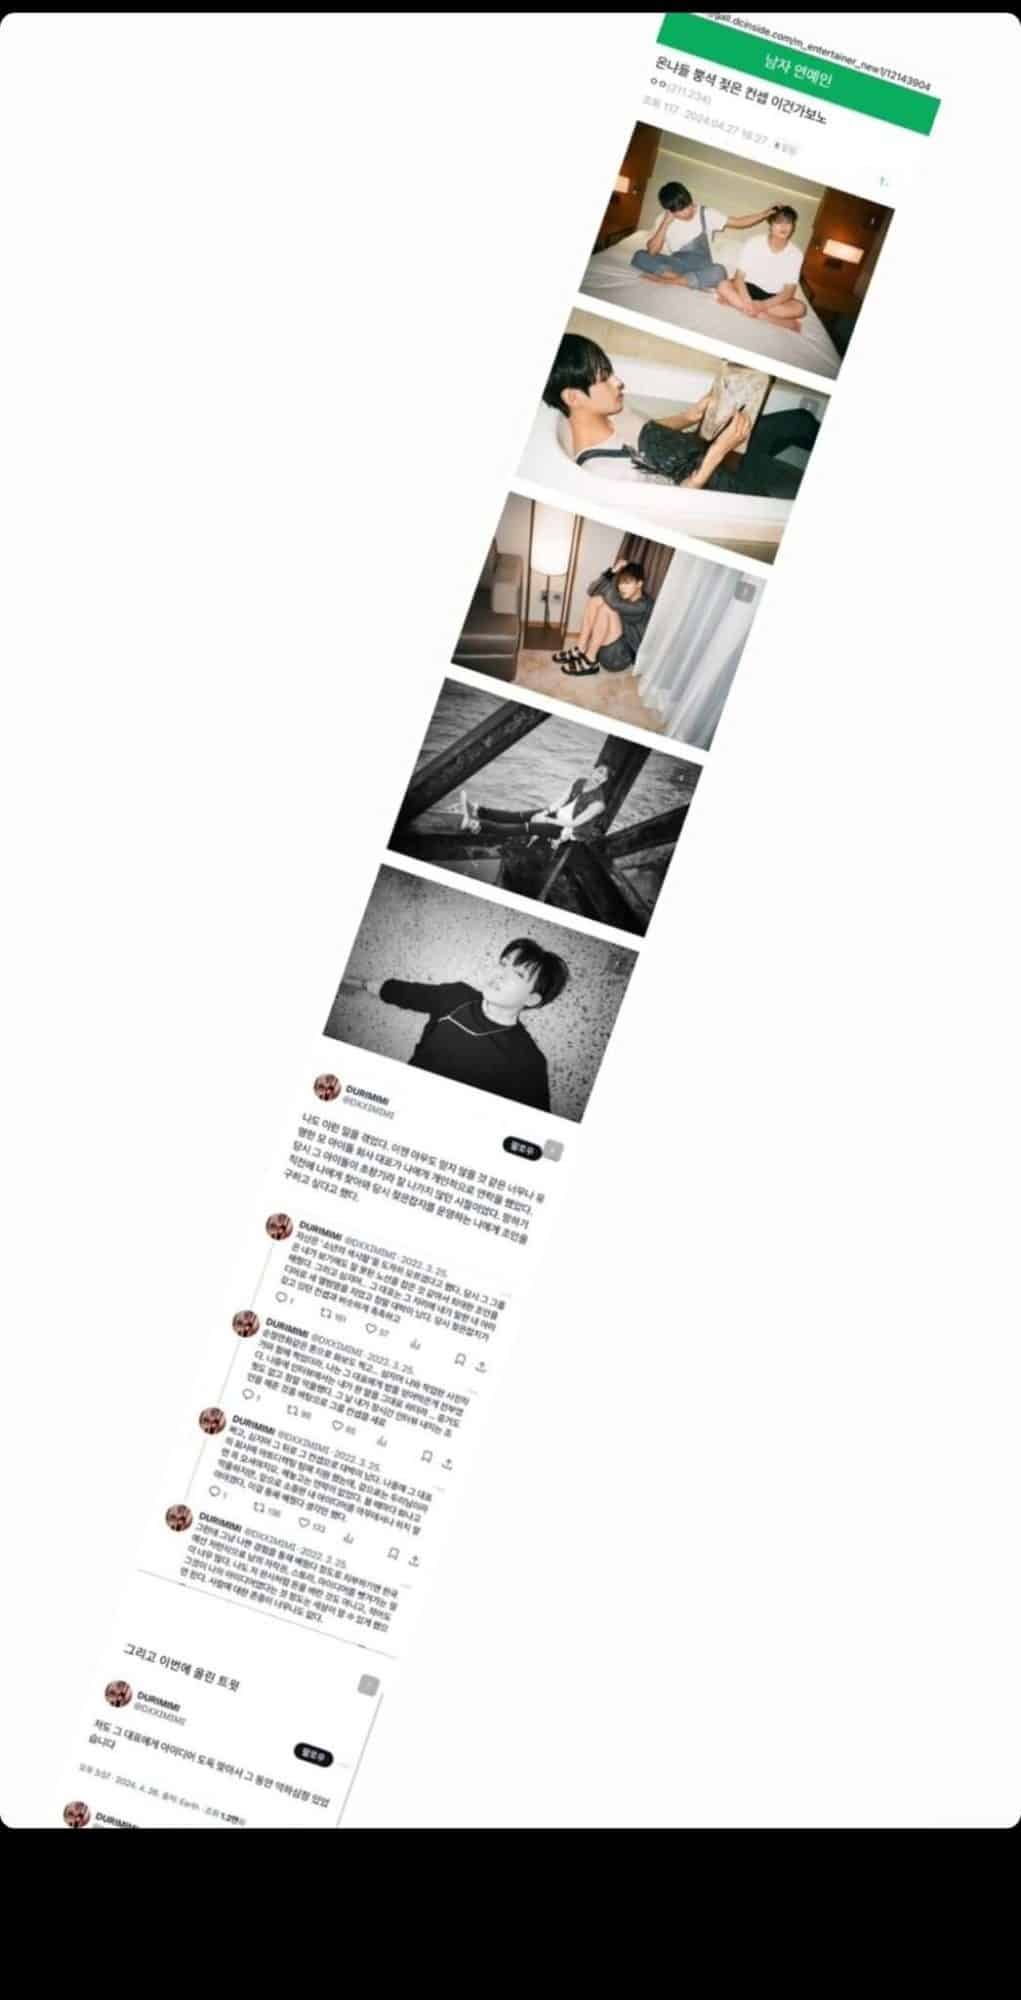 [theqoo] Нетизены обсудили пост редактора журнала с обвинением Бан Ши Хёка в предполагаемом воровстве концепта для альбома BTS